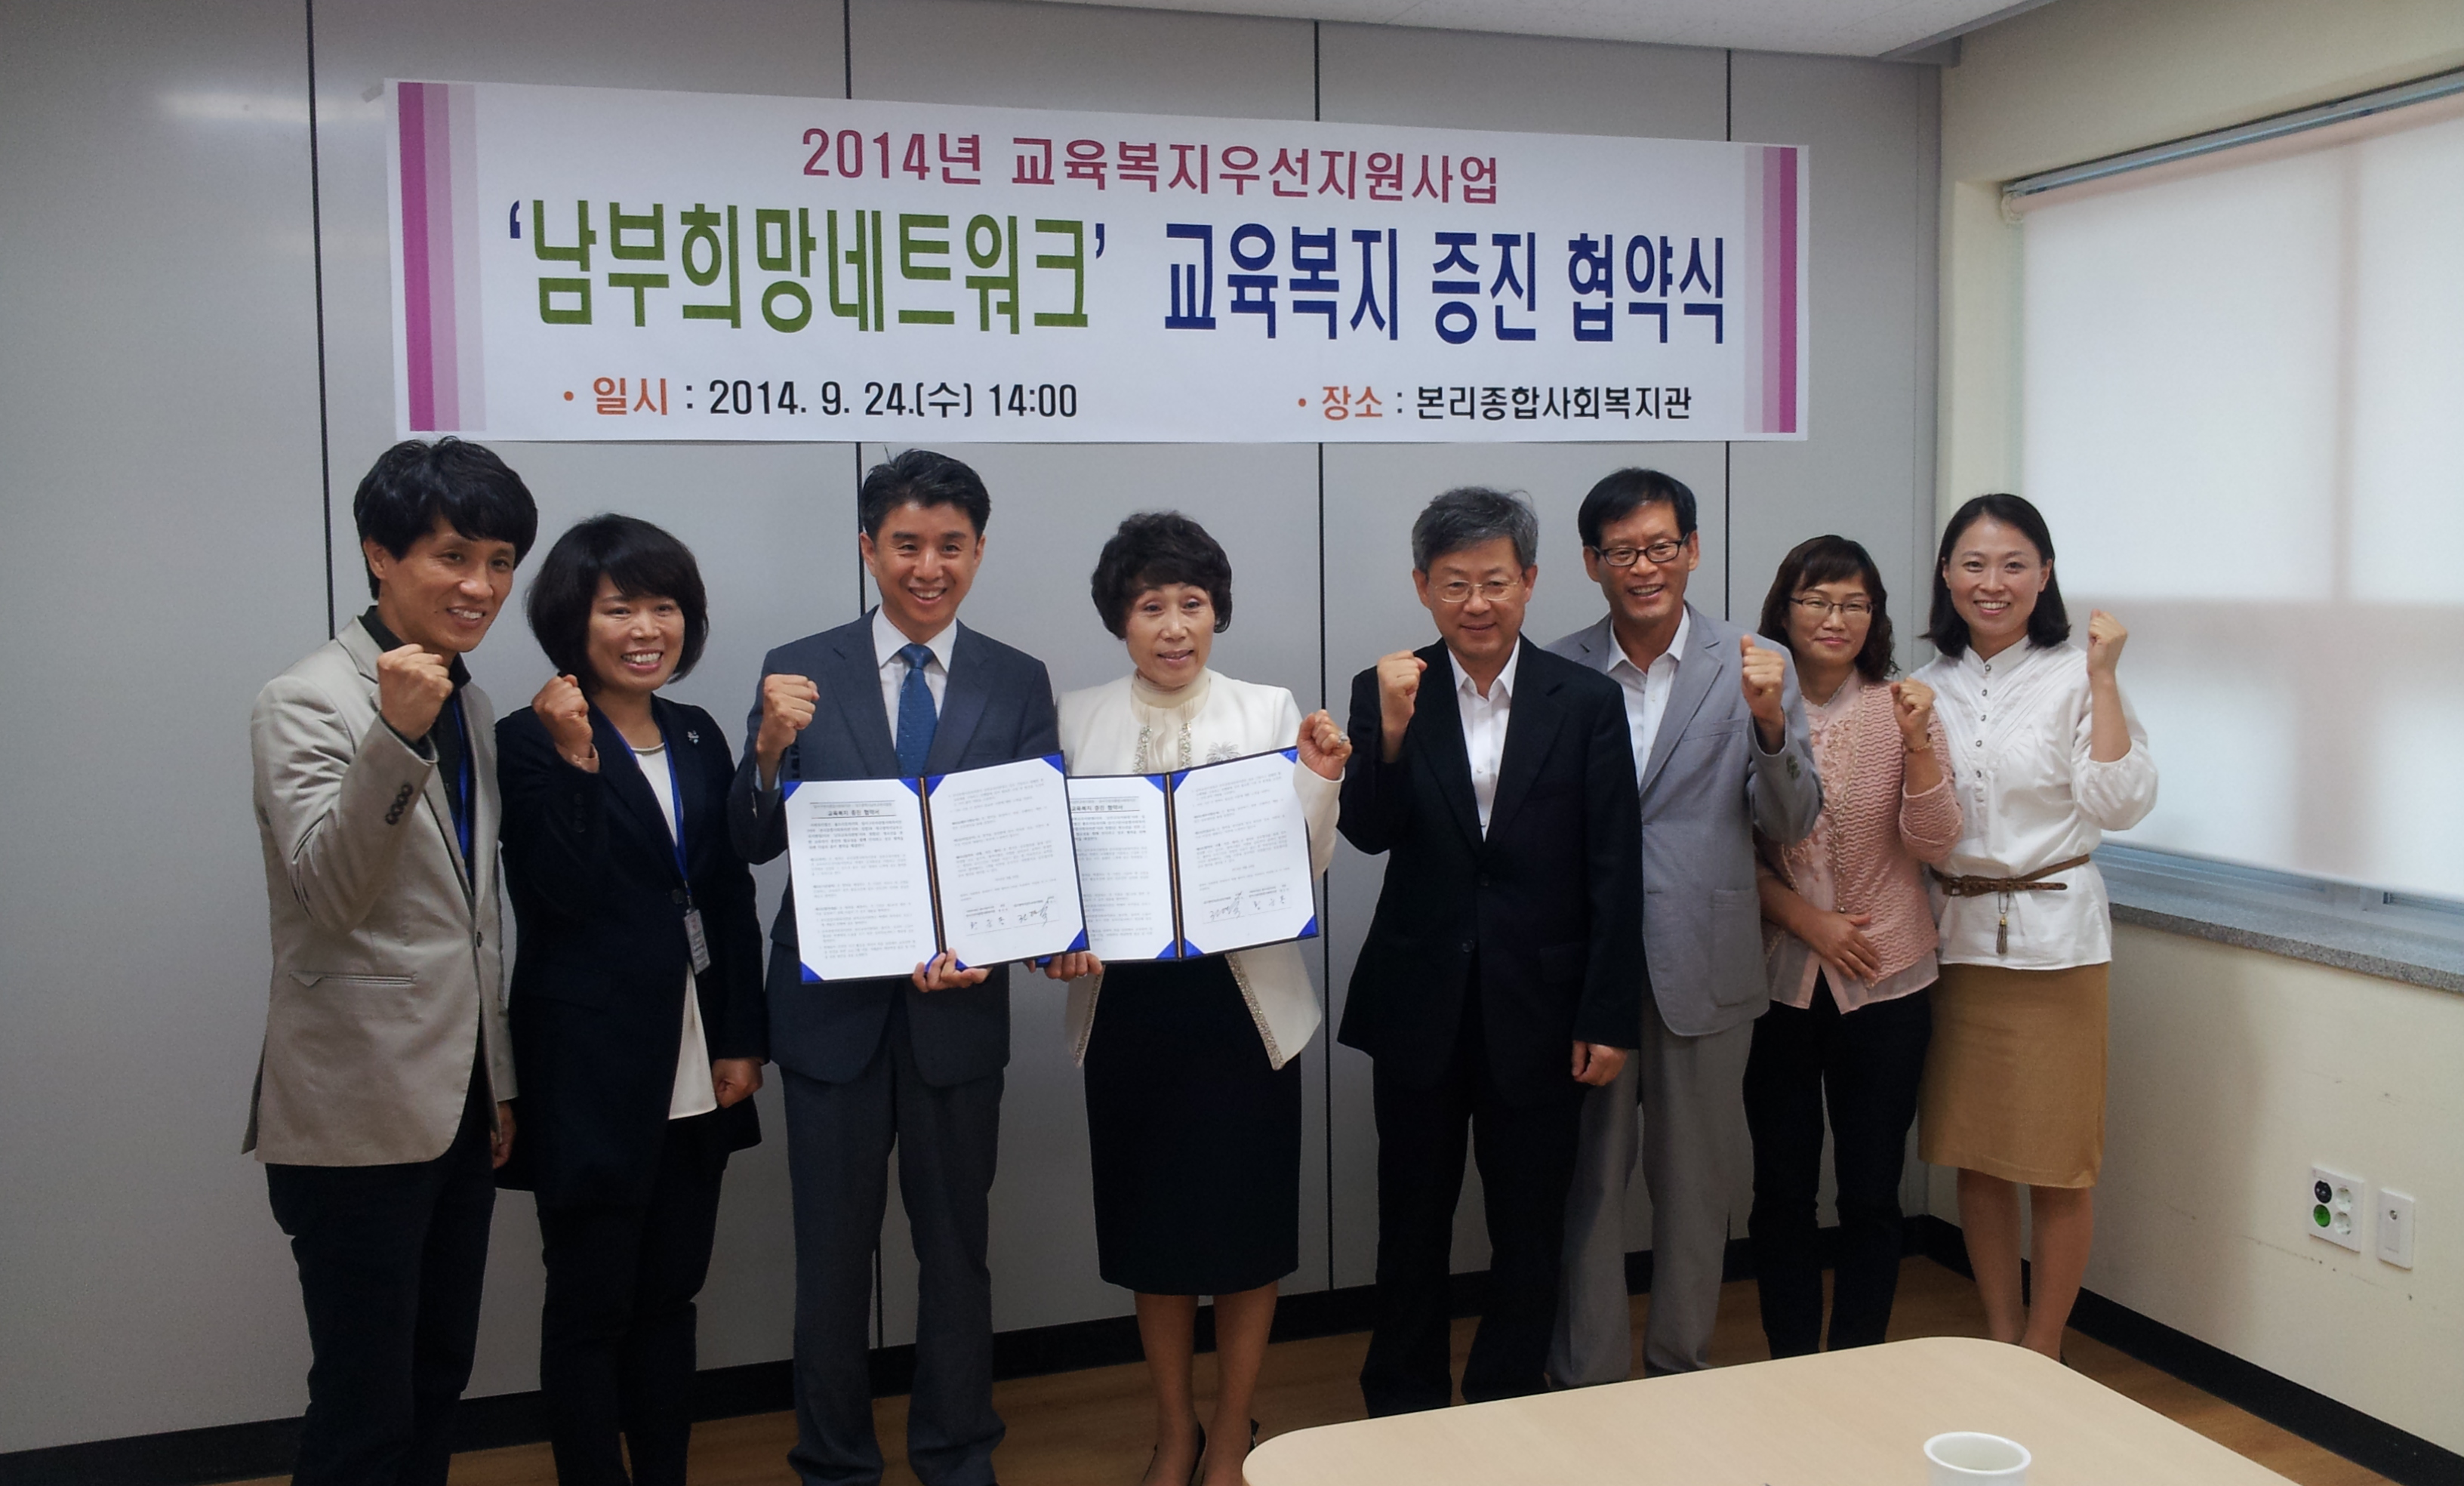 복지네트워크 구축을 위한 대구광역시남부교육지원청 협약식 개최